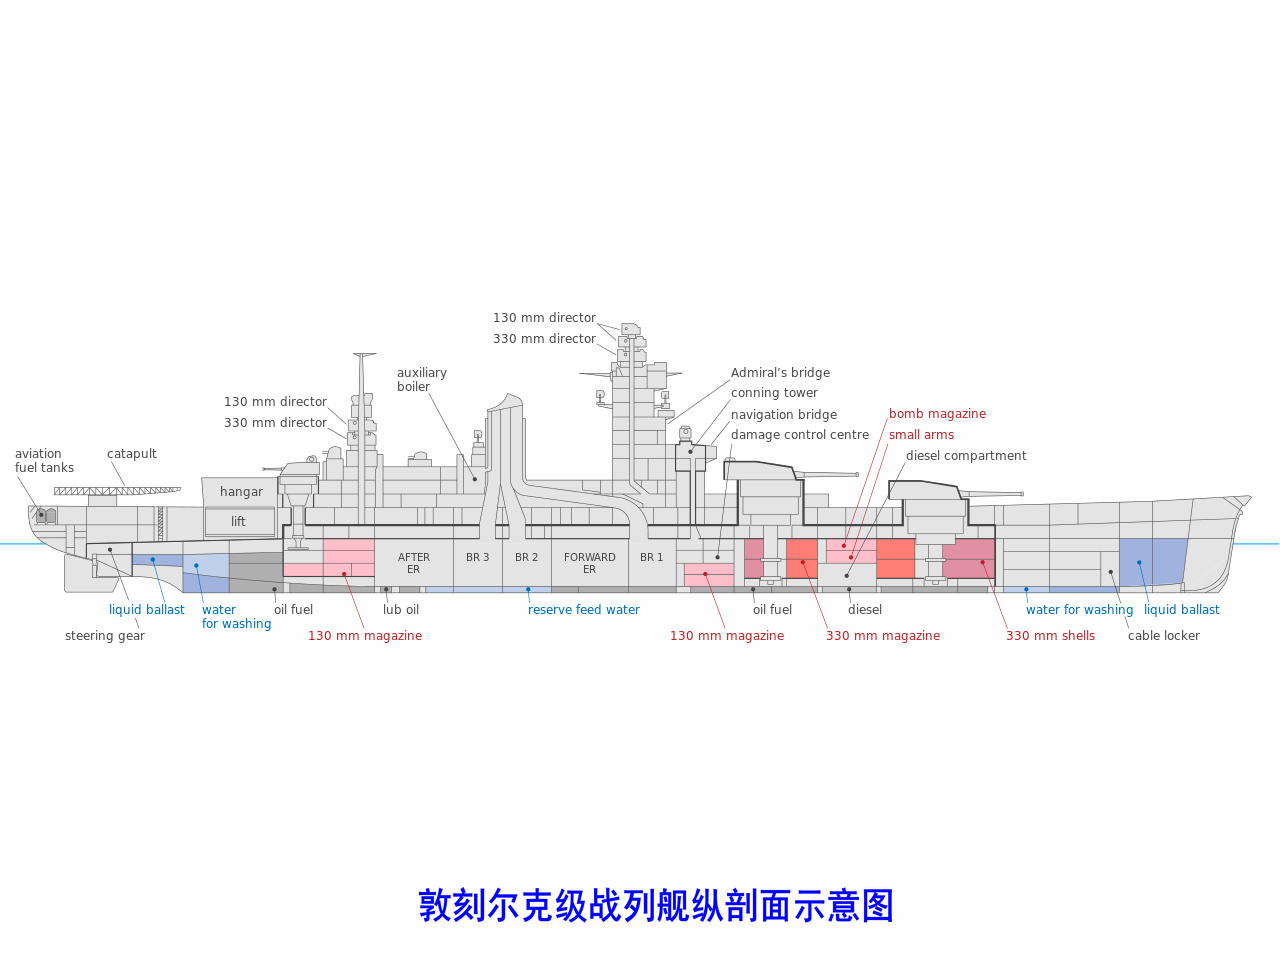 敦刻爾克級戰列艦武器裝備配置示意圖